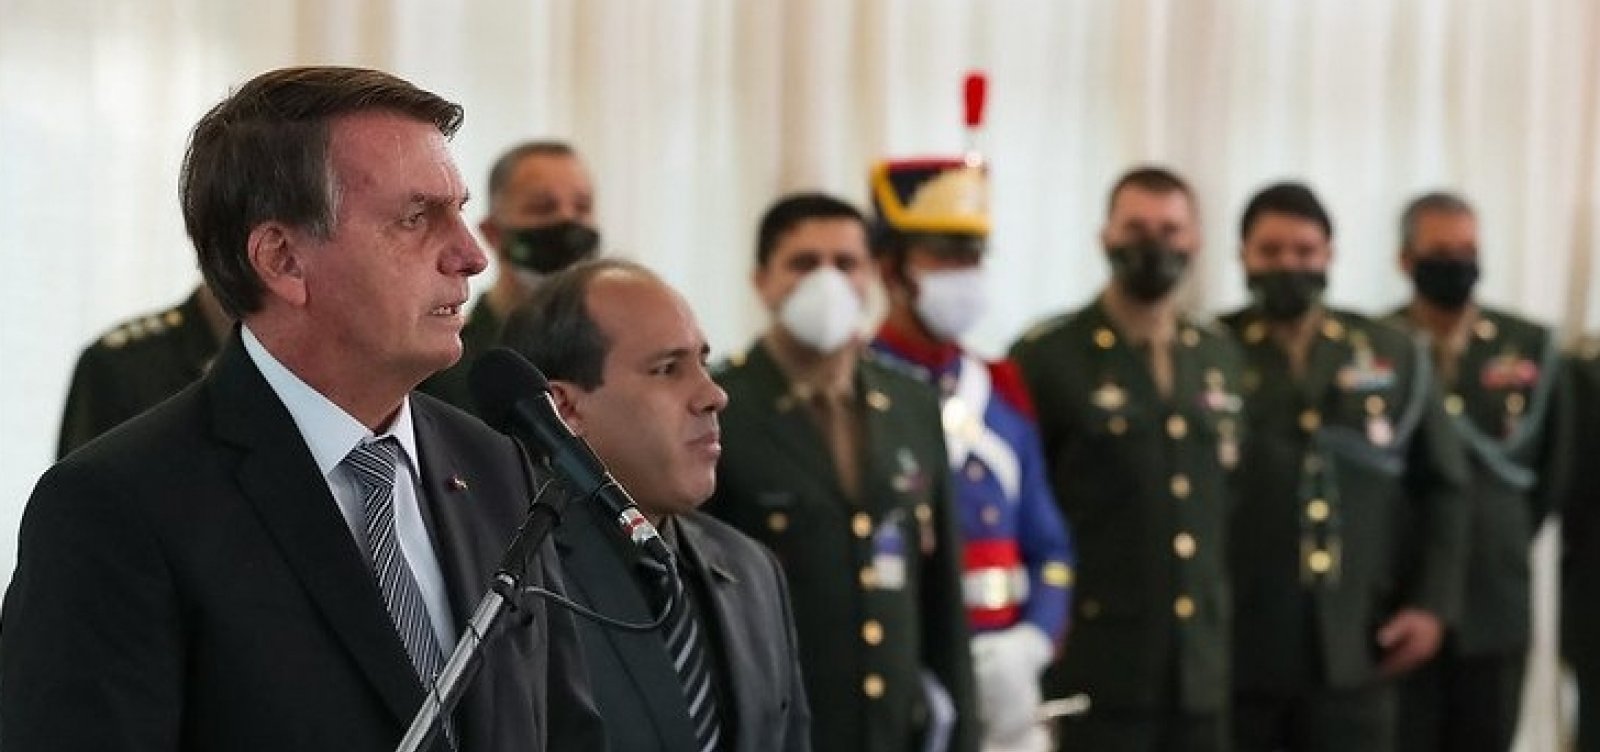 Após trocas nas Forças Armadas, Bolsonaro volta a falar em 'meu Exército' durante cerimônia